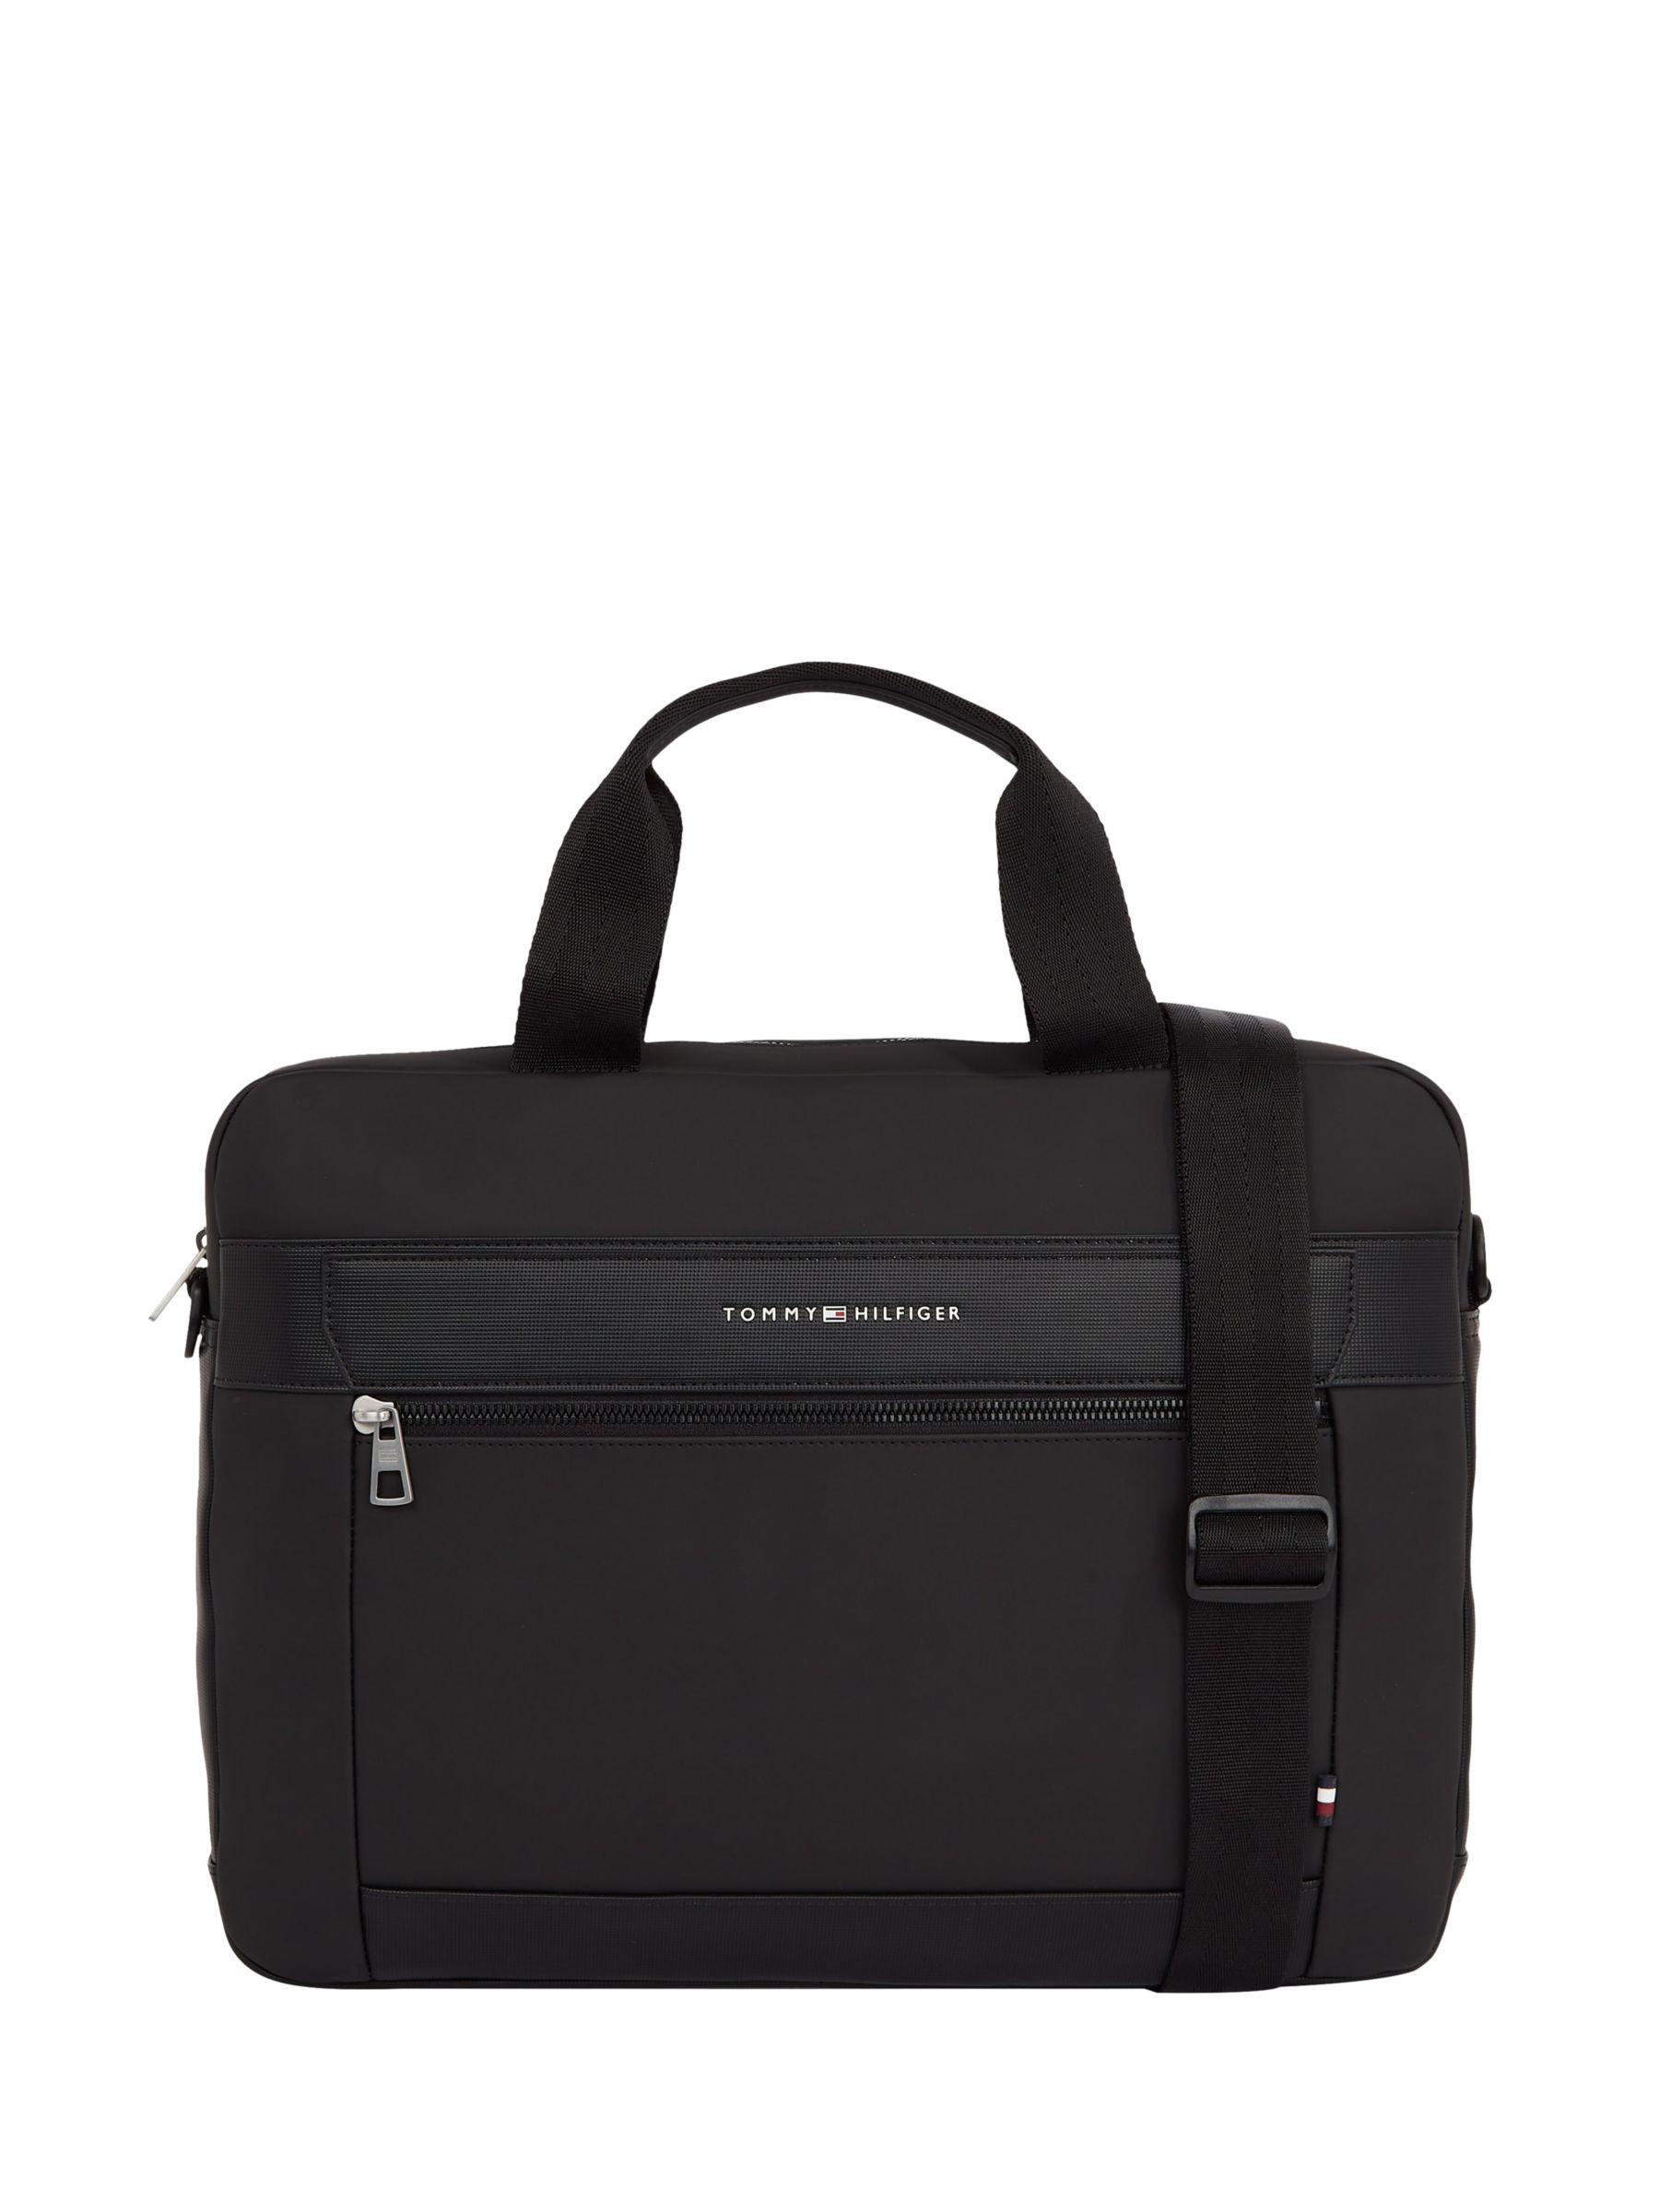 Skalk overliggende Giraf Tommy Hilfiger Casual Slim Laptop Bag, Black, One Size